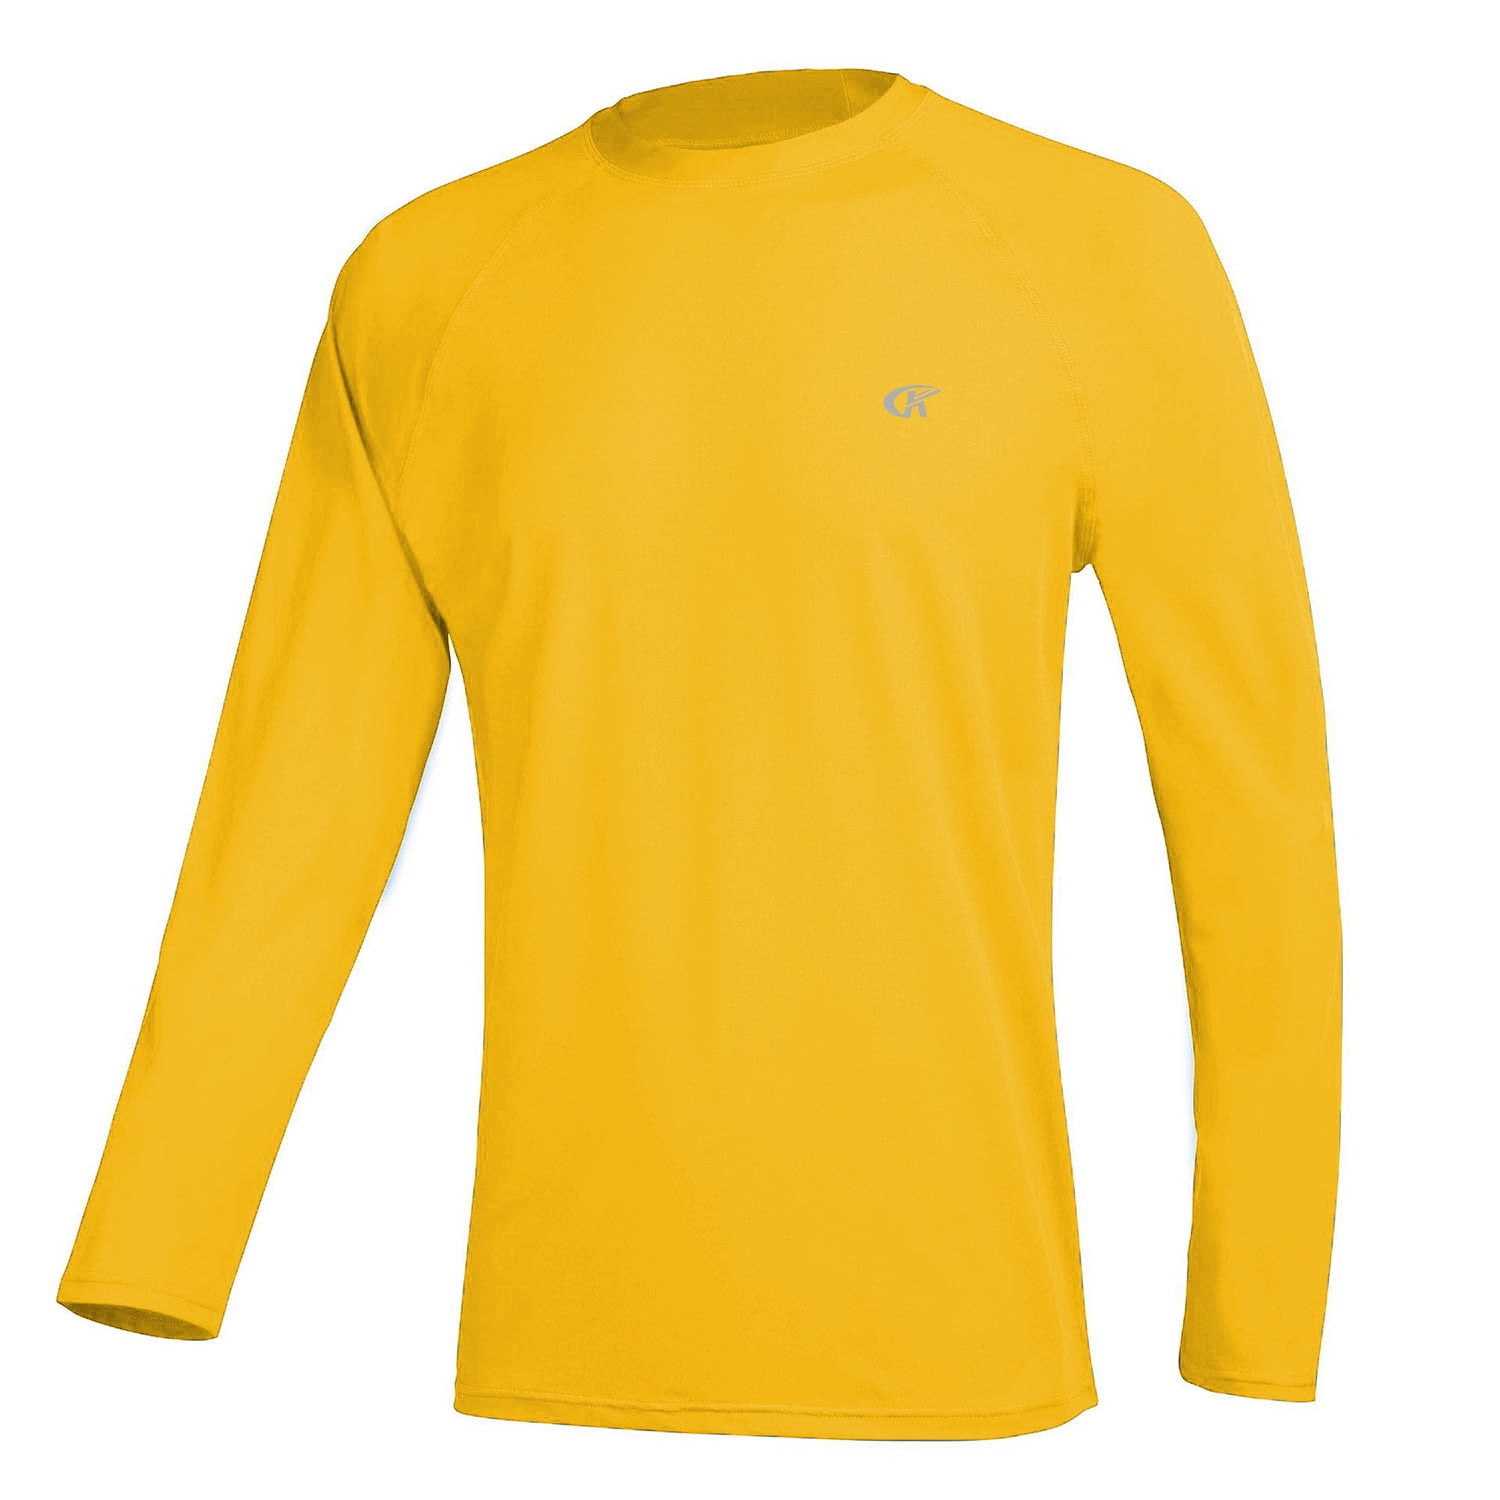 Tyhengta Men's Long Sleeve Swim Shirts Rashguard UPF 50+ UV Sun ...